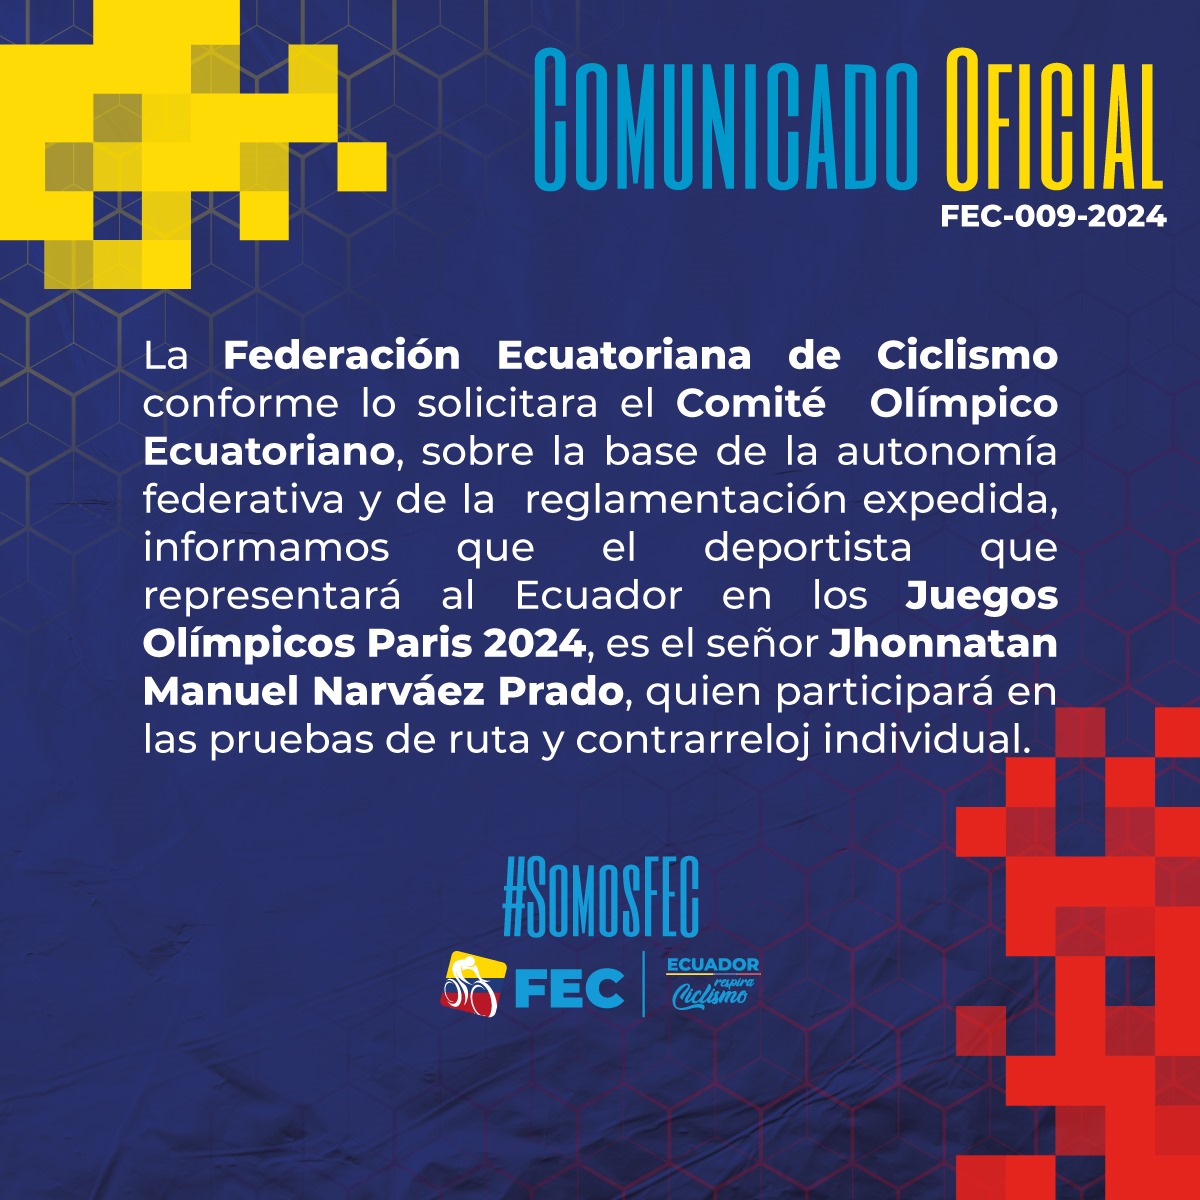 Comunicado de la Federación Ecuatoriana de Ciclismo, el 27 de mayo de 2024.